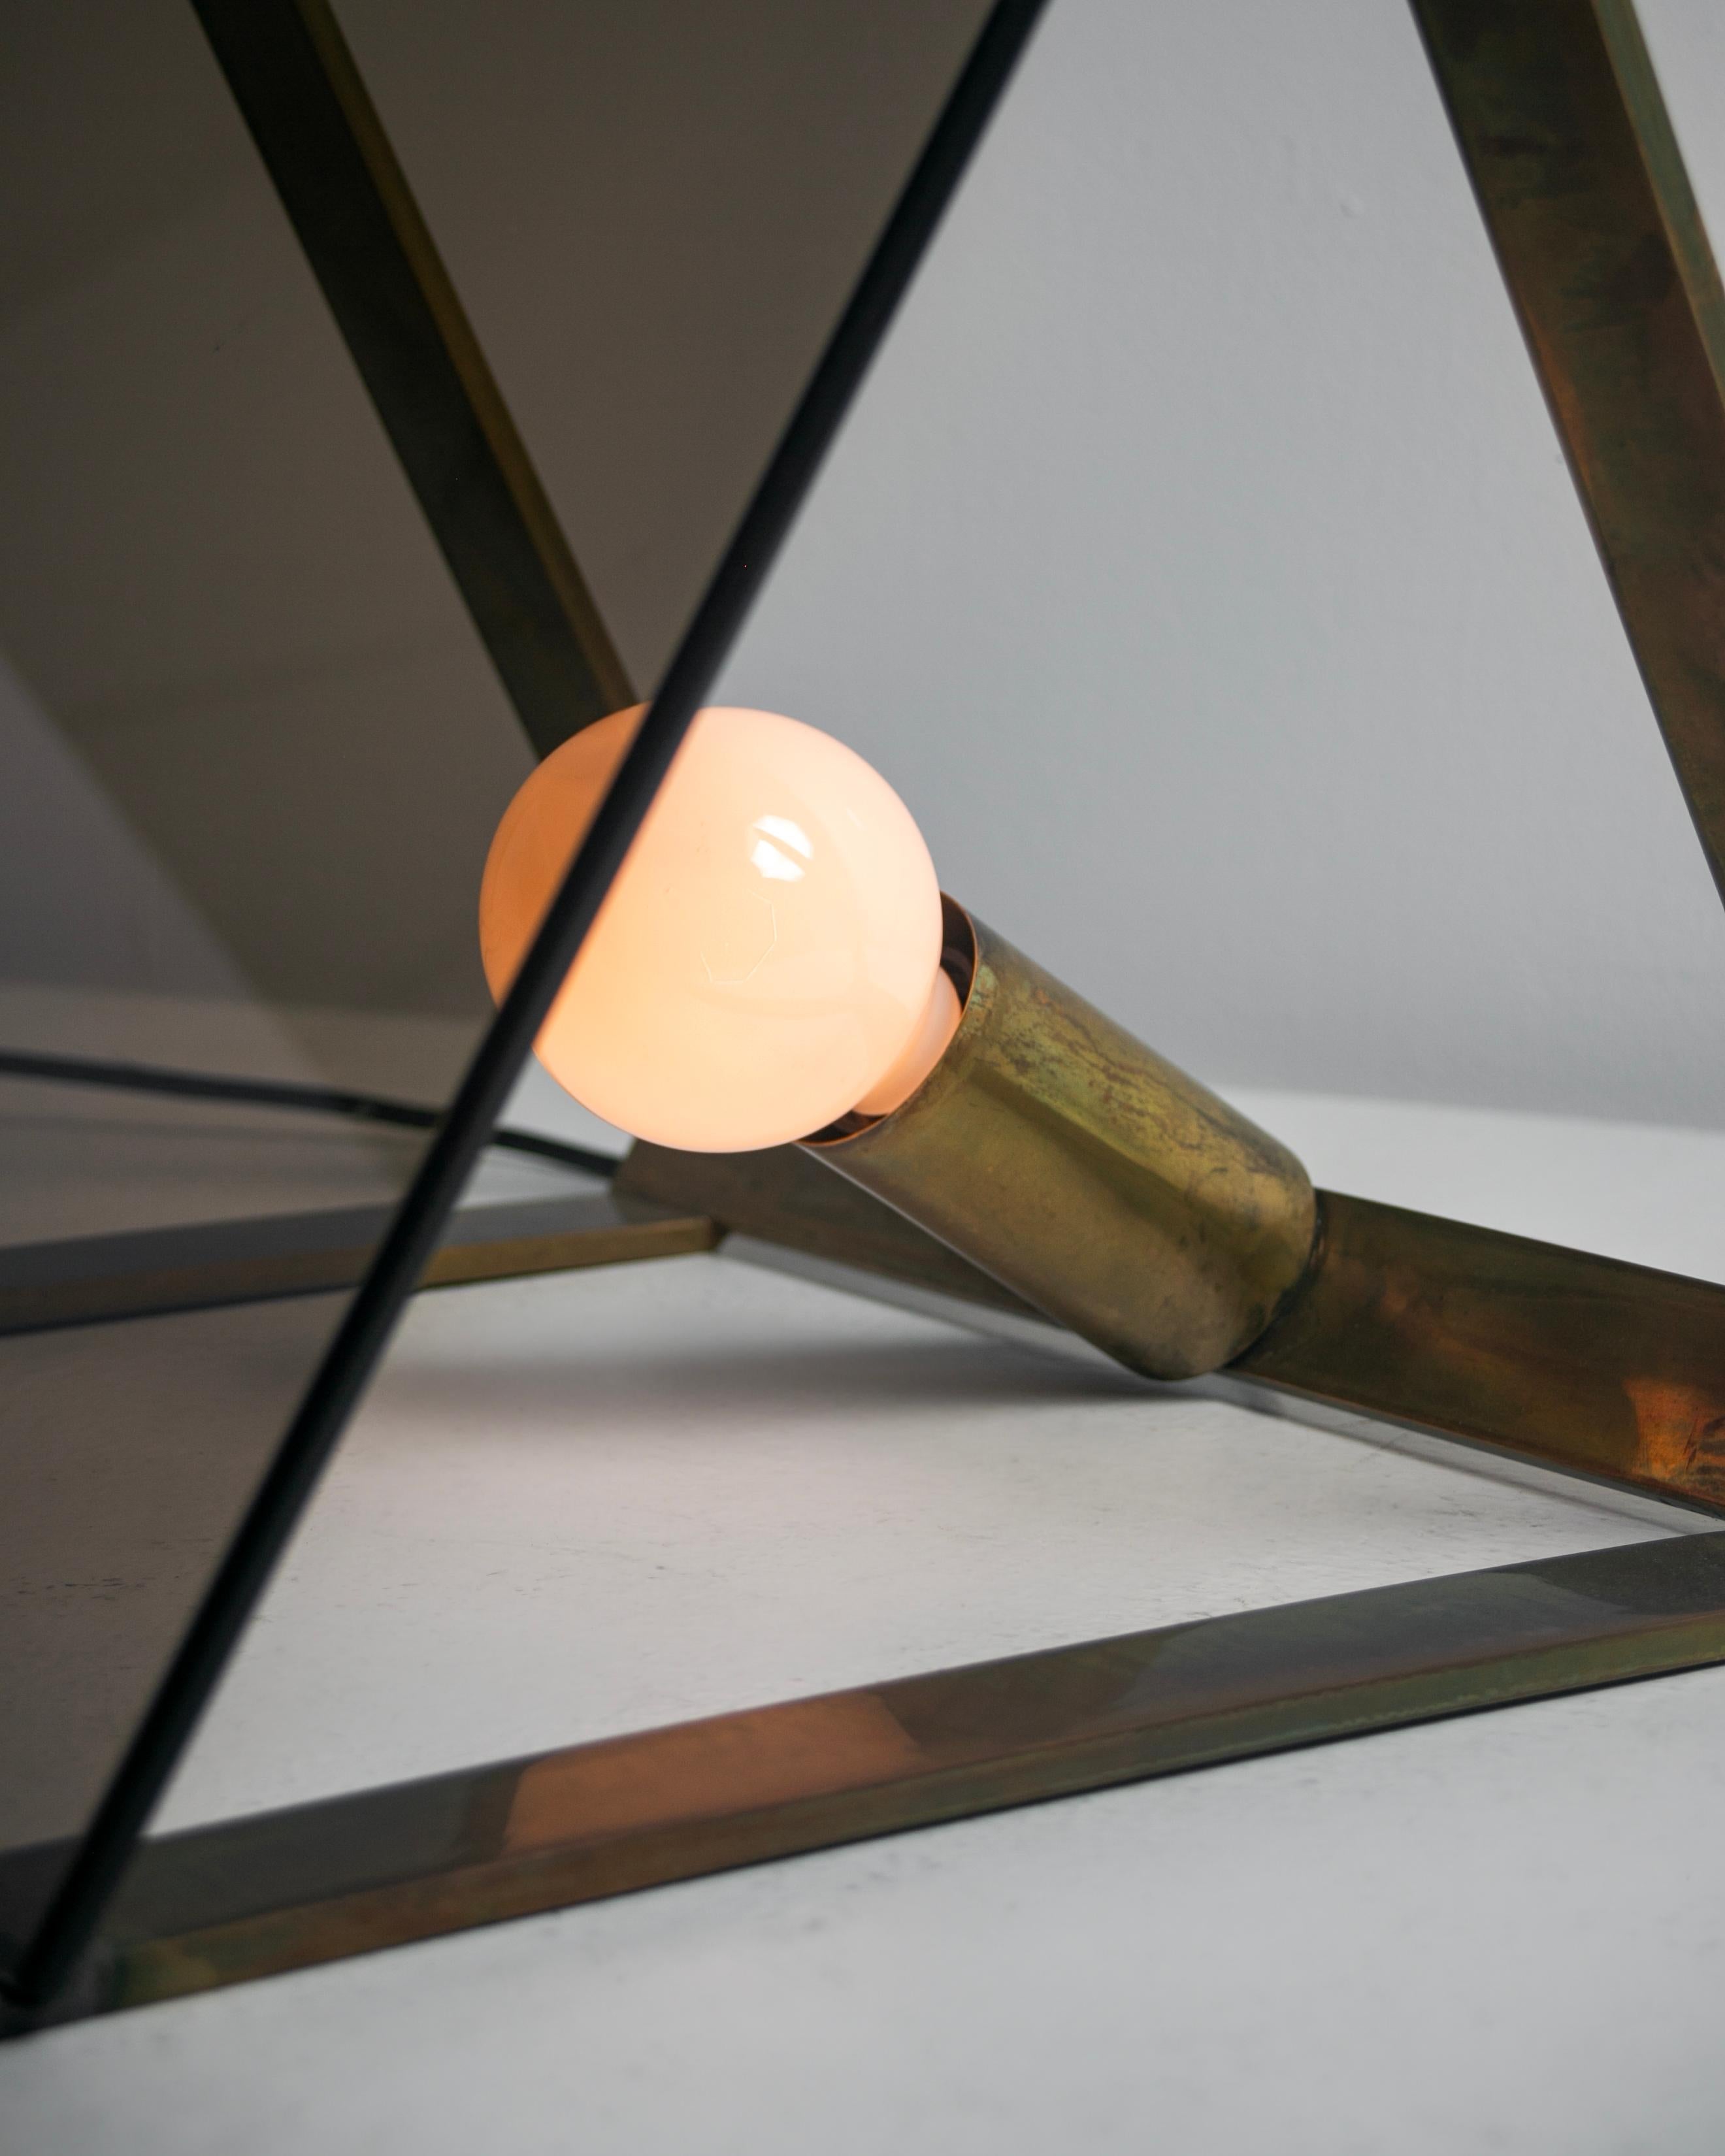 Lampe de table/plancher italienne attribuée à Fontana Arte. Conçu et fabriqué en Italie, vers les années 1960. Lampe de table triangulaire qui présente une façade en verre gris fumé, associée à une structure à barre plate en laiton joliment vieilli.